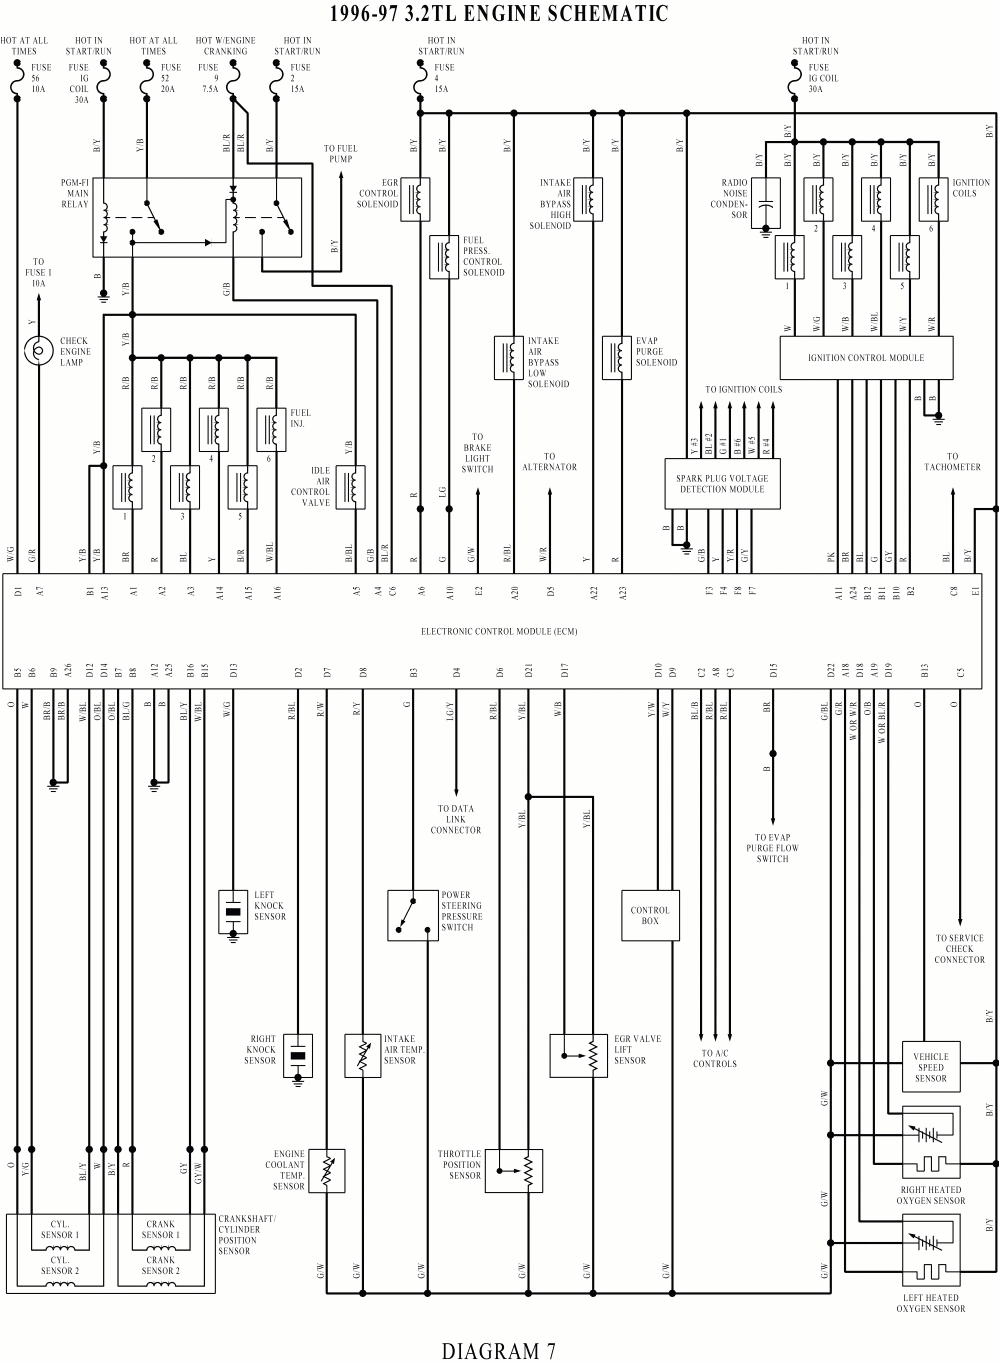 94 integra wiring diagram wiring diagram basic 94 integra wiring diagram